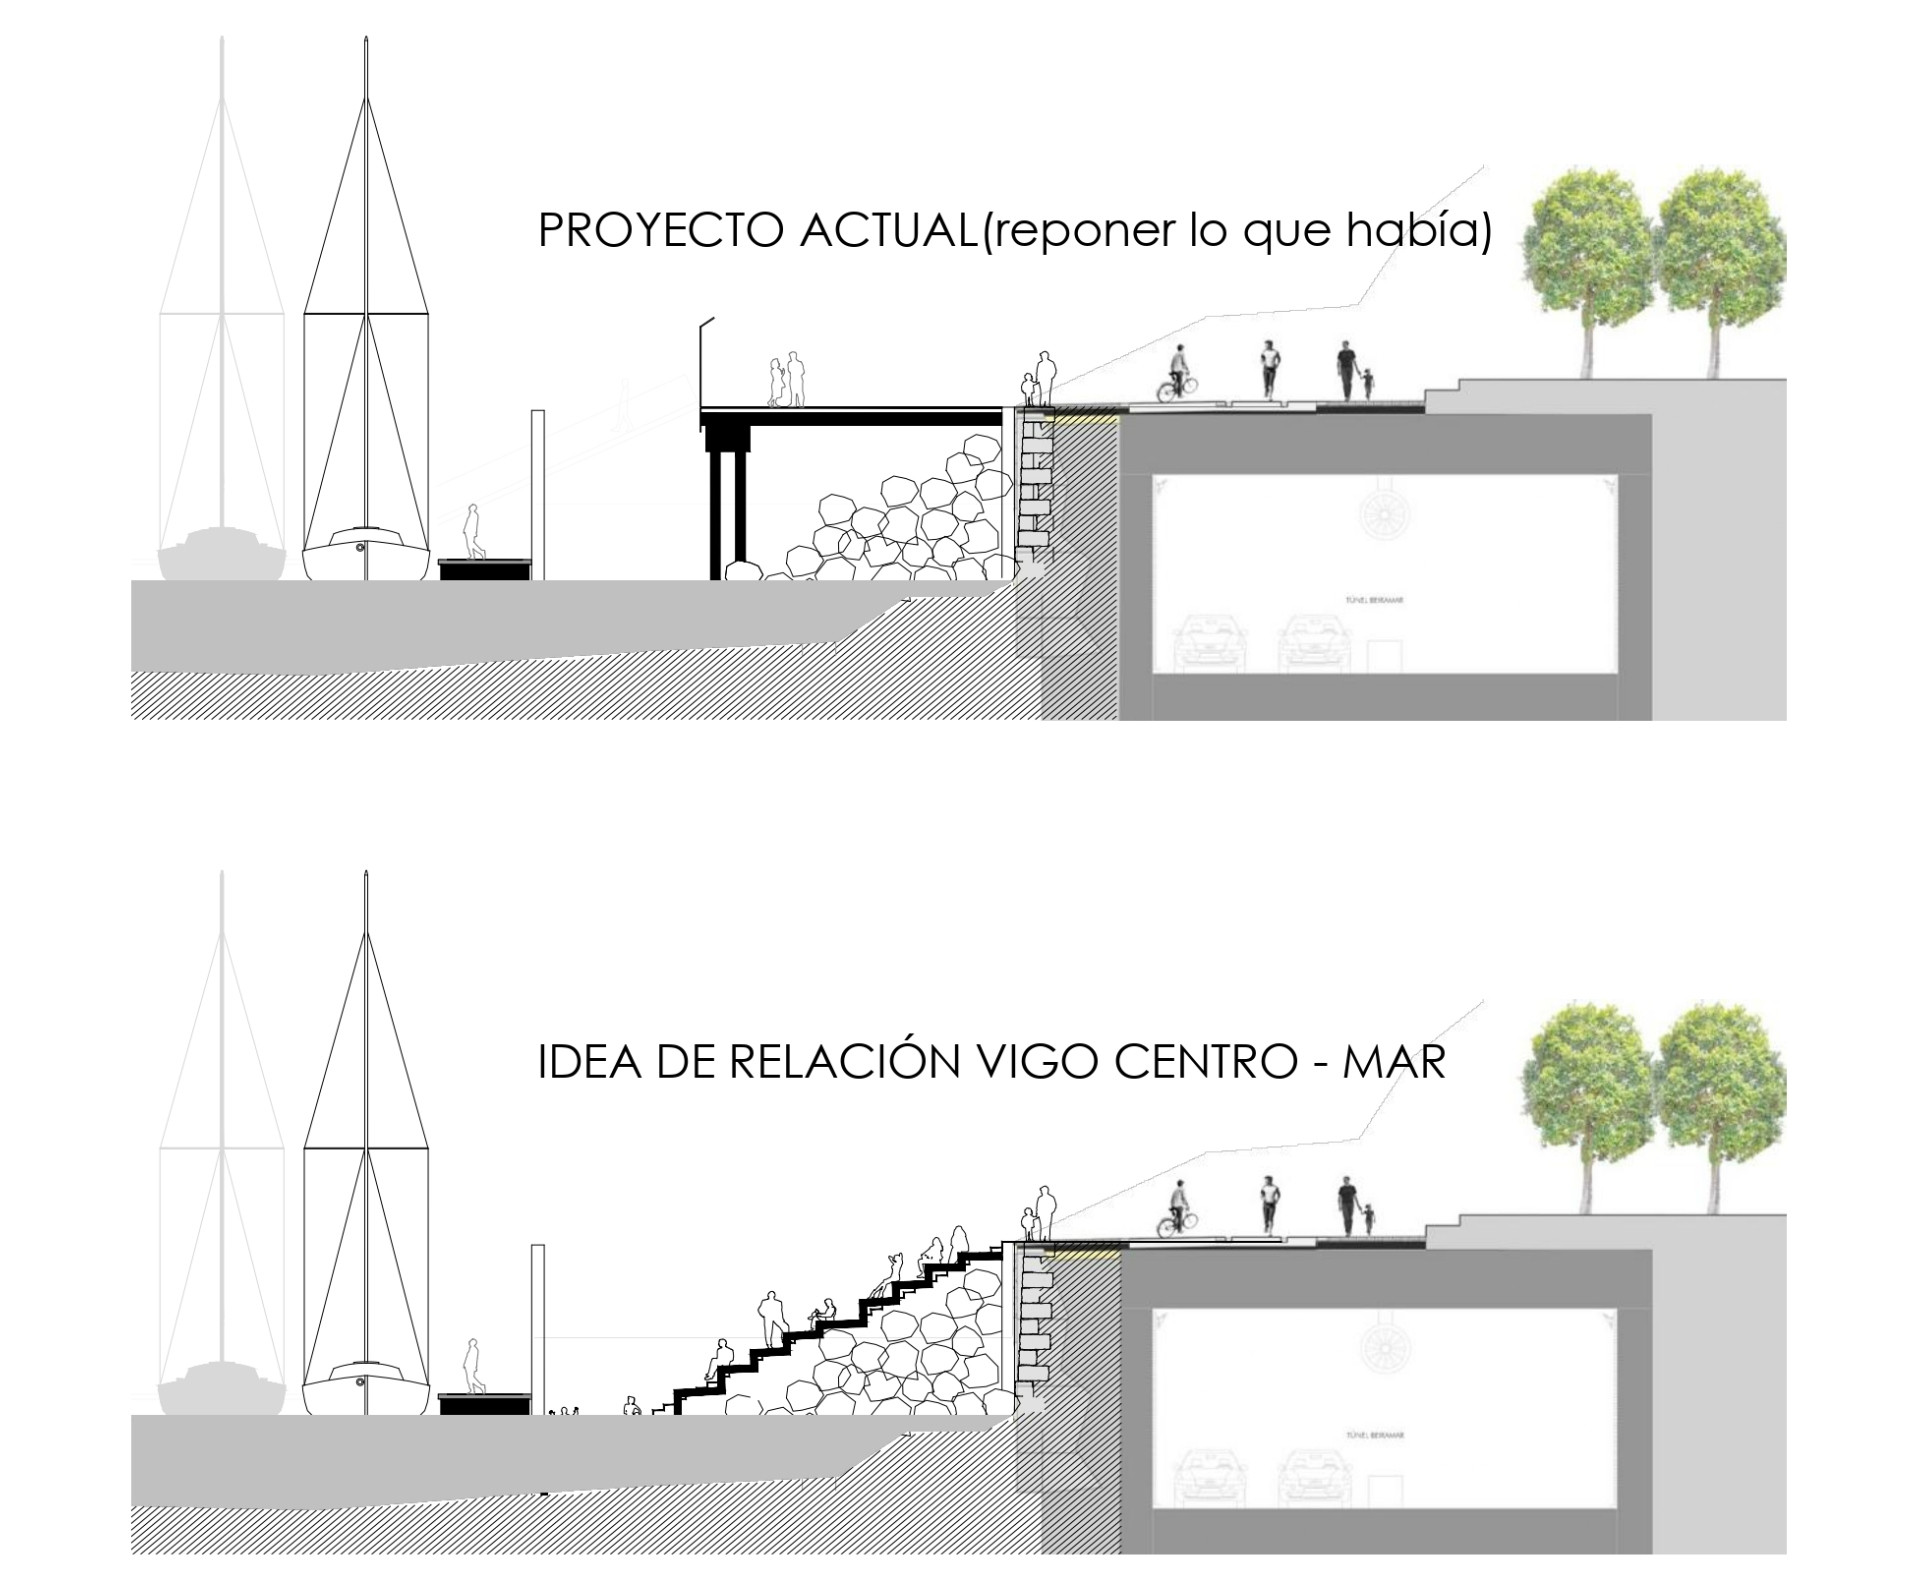 Diseño preliminar de la propuesta de Feprohos y Zona Náutico